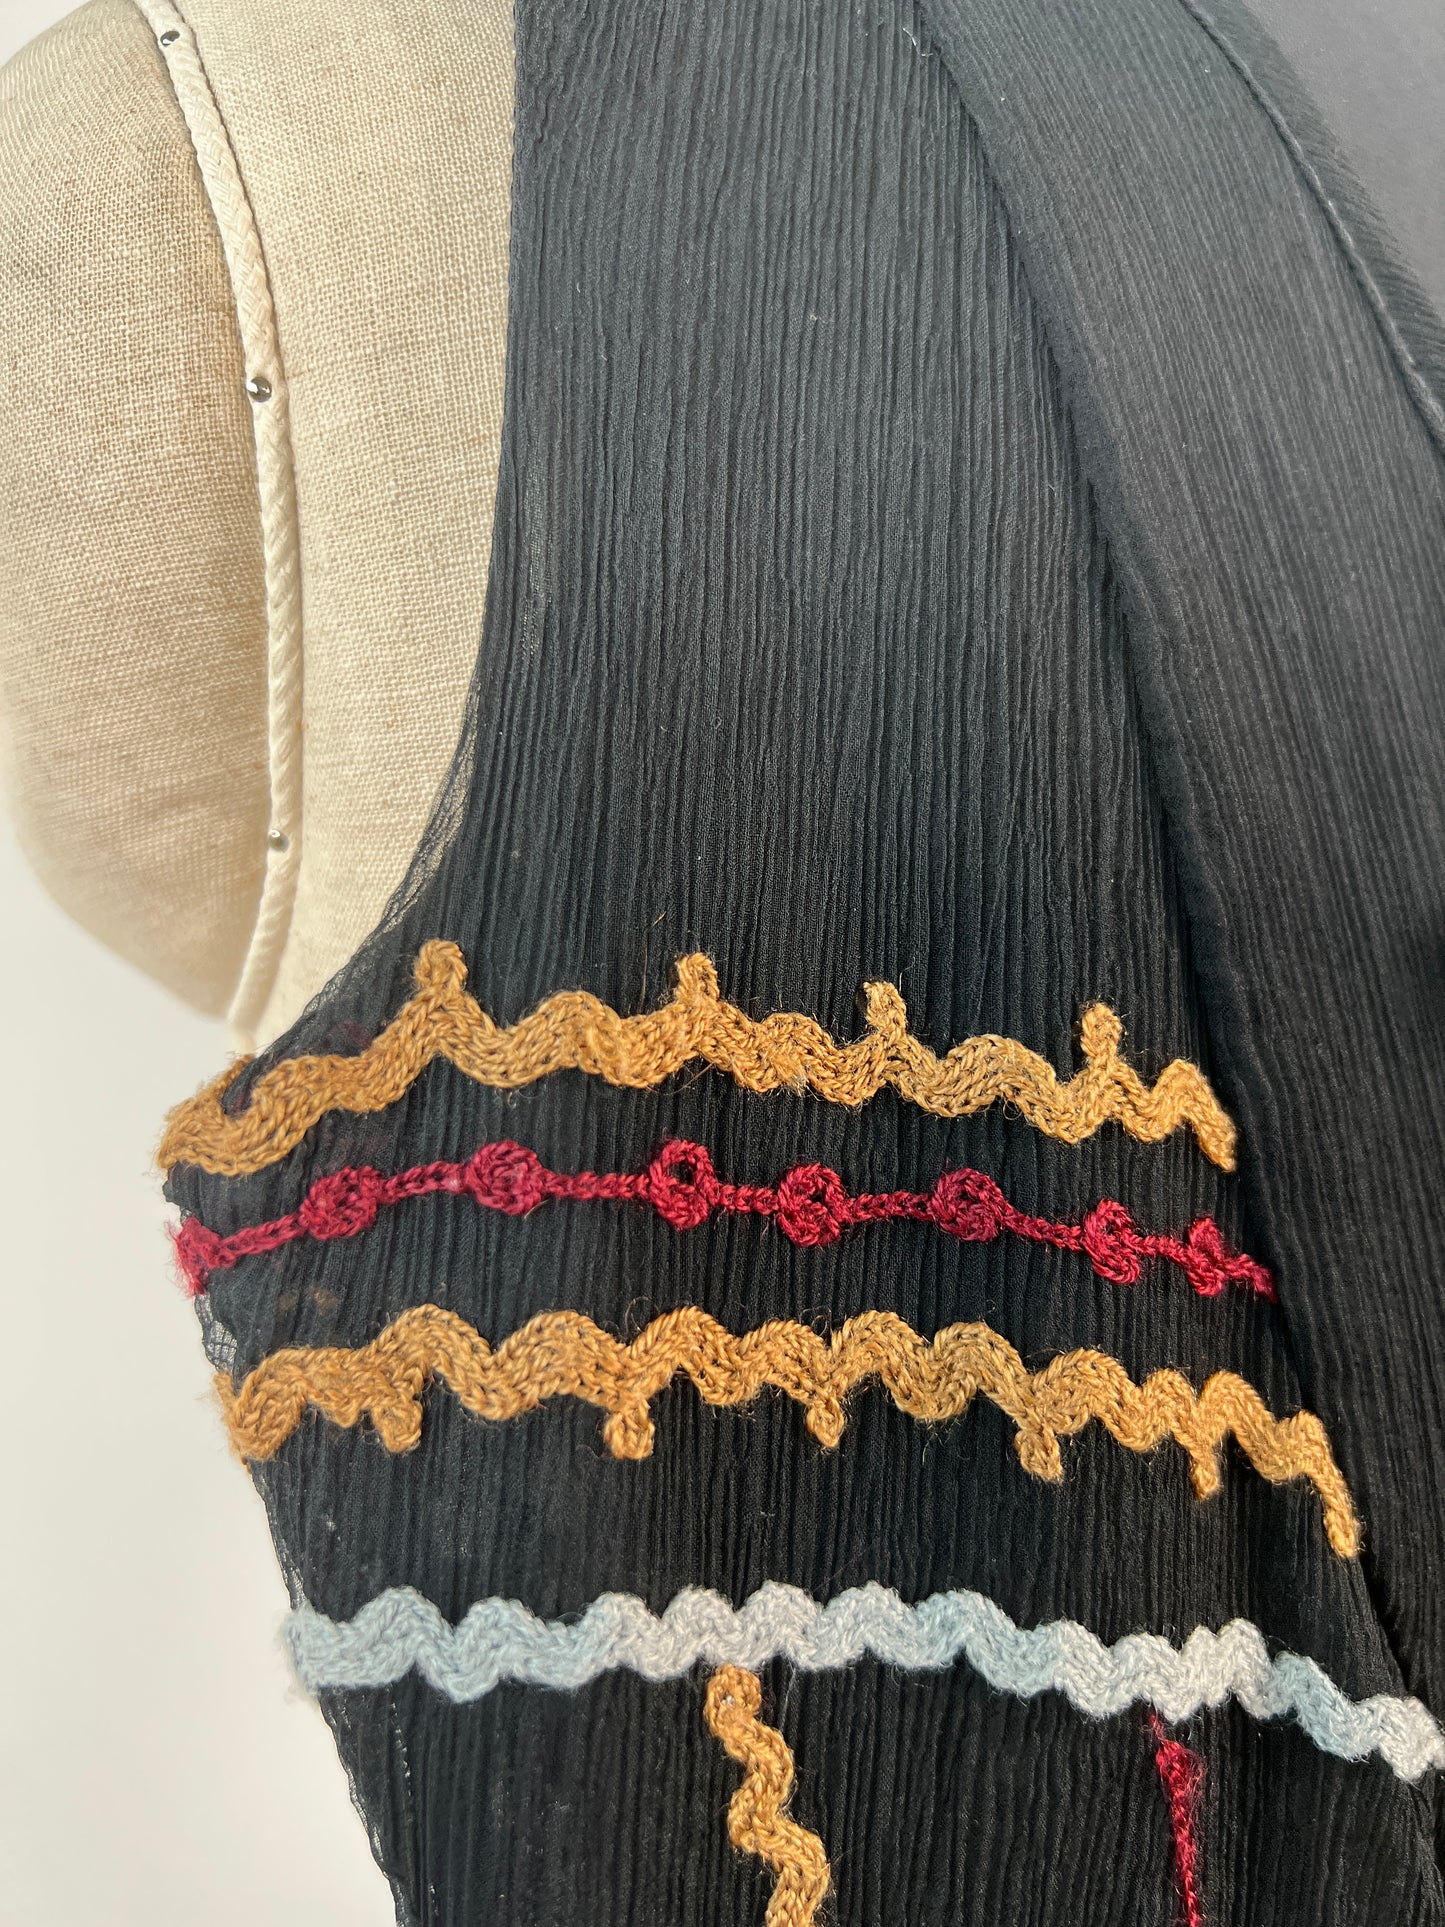 Robe noire en soie à broderies colorées et paillettes (XXS/XS)